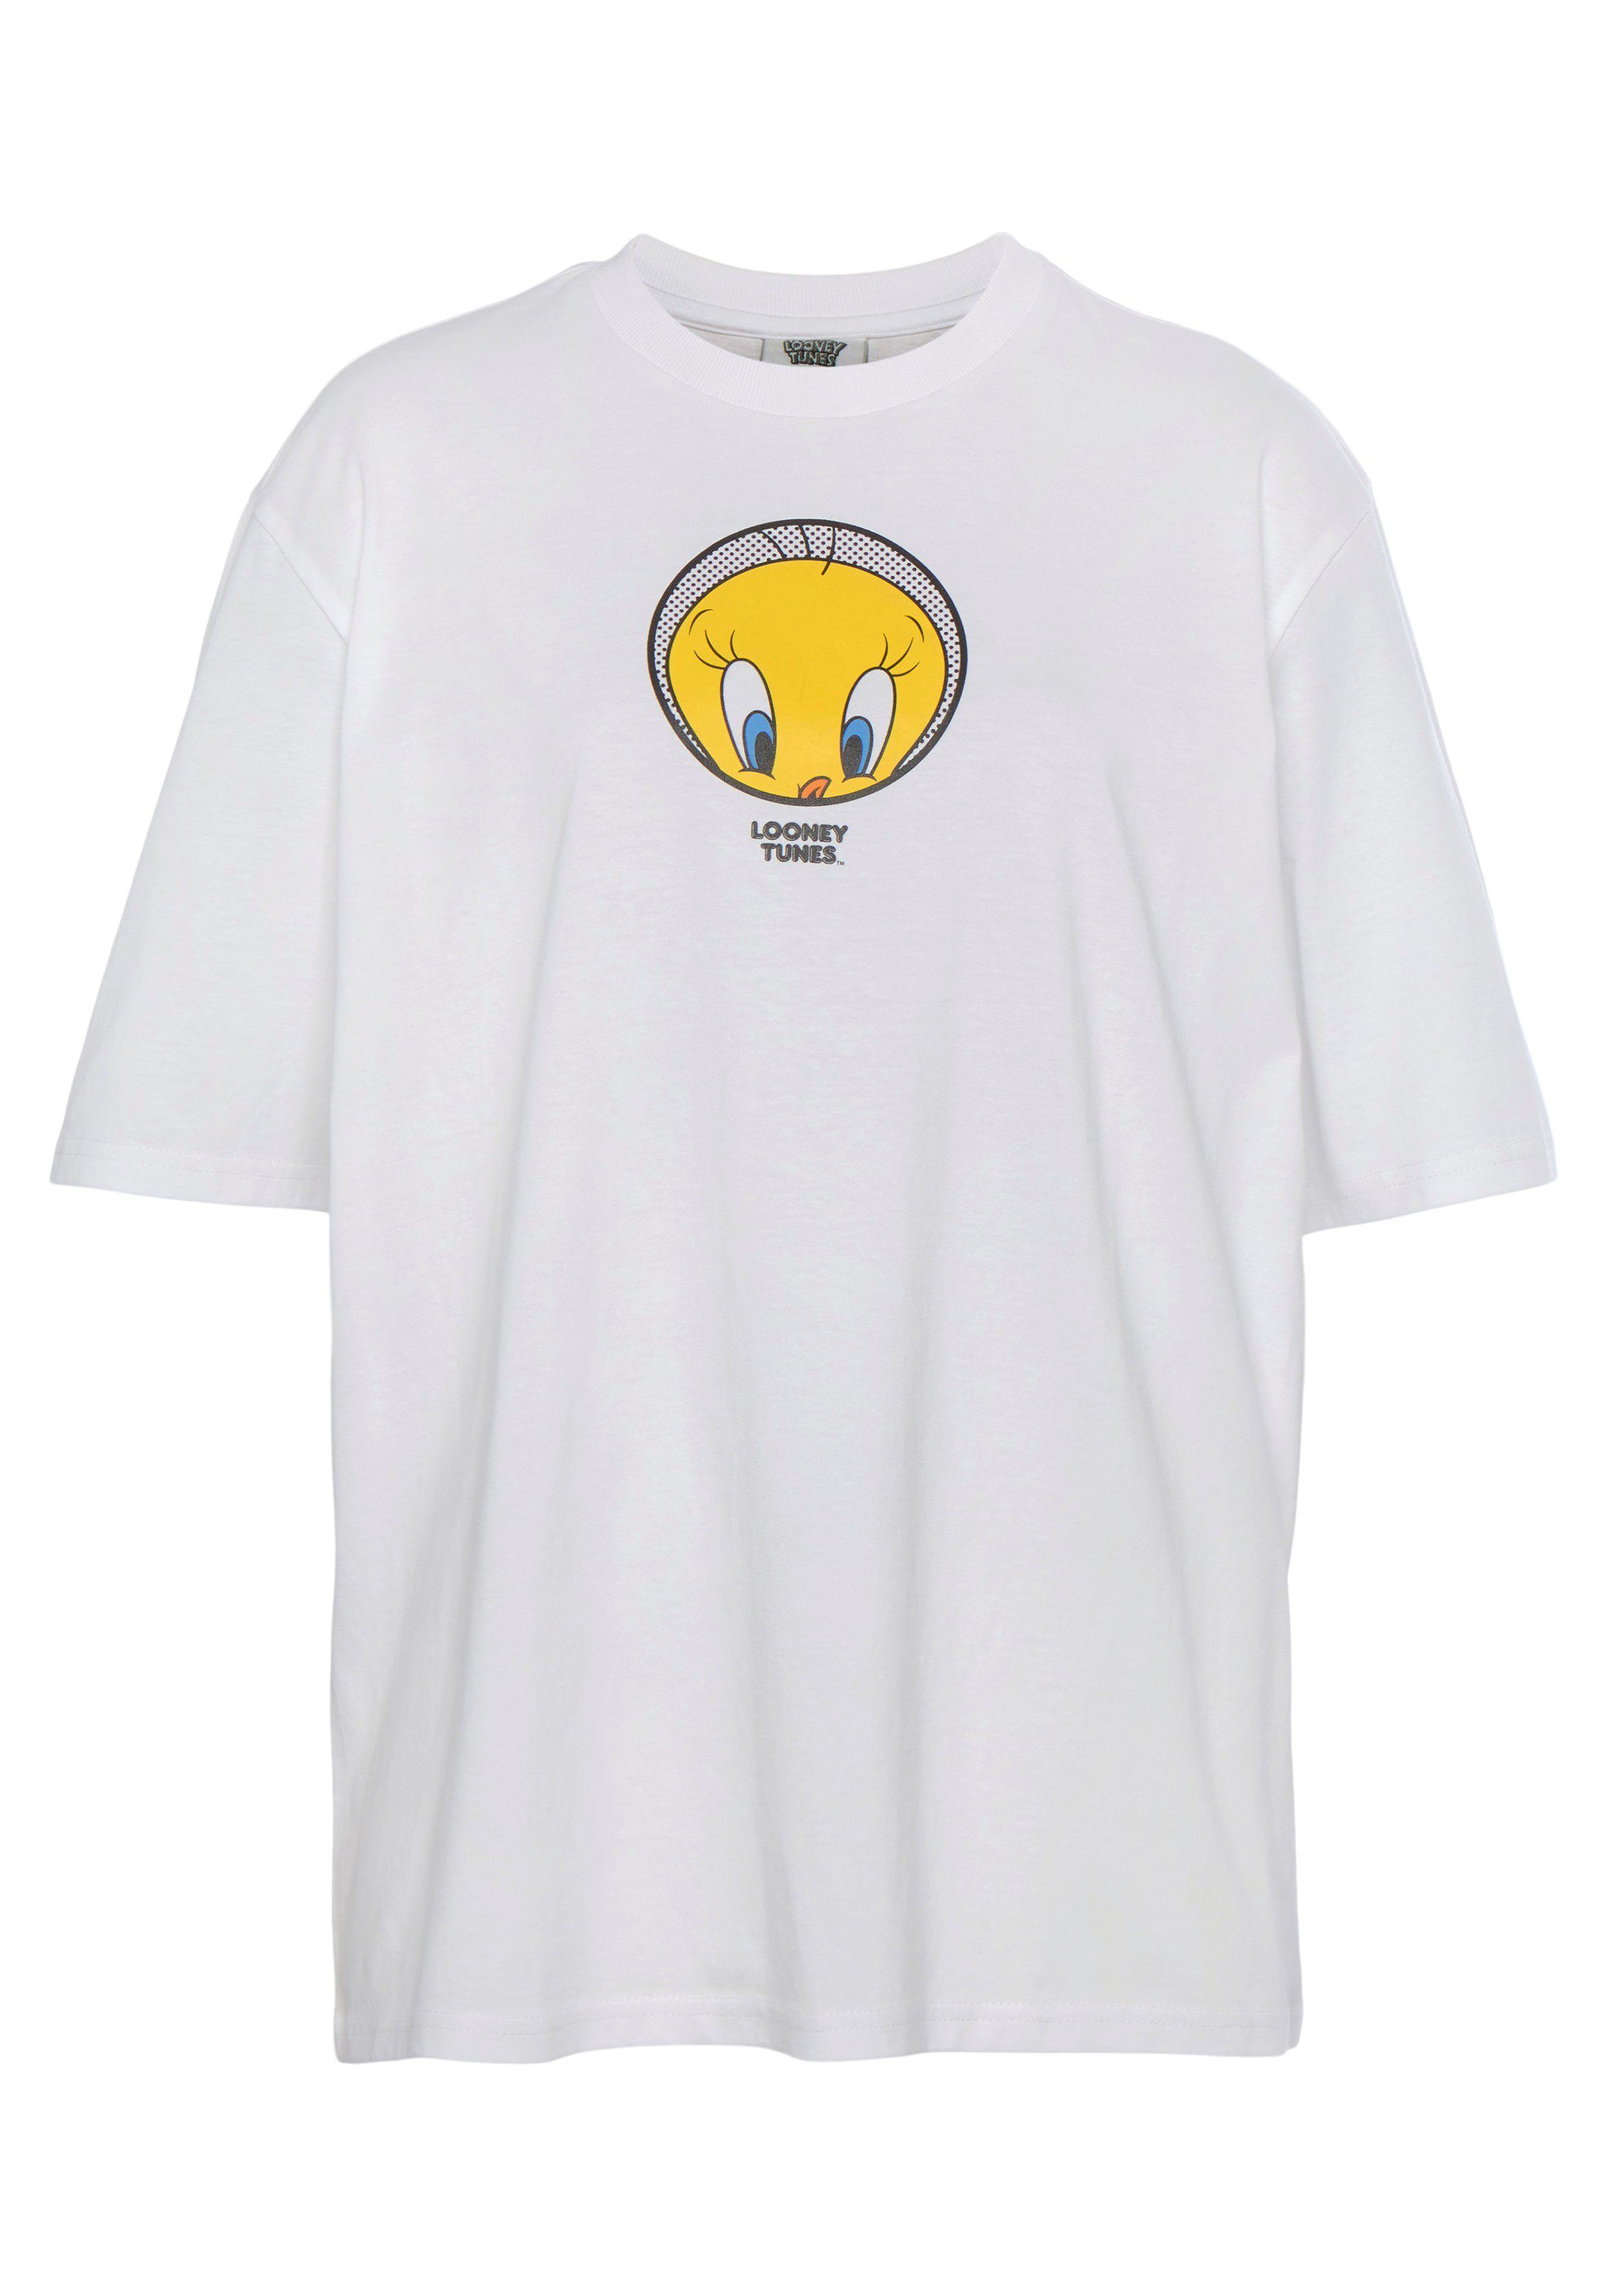 Capelli New York T-Shirt white Tweety T-Shirt